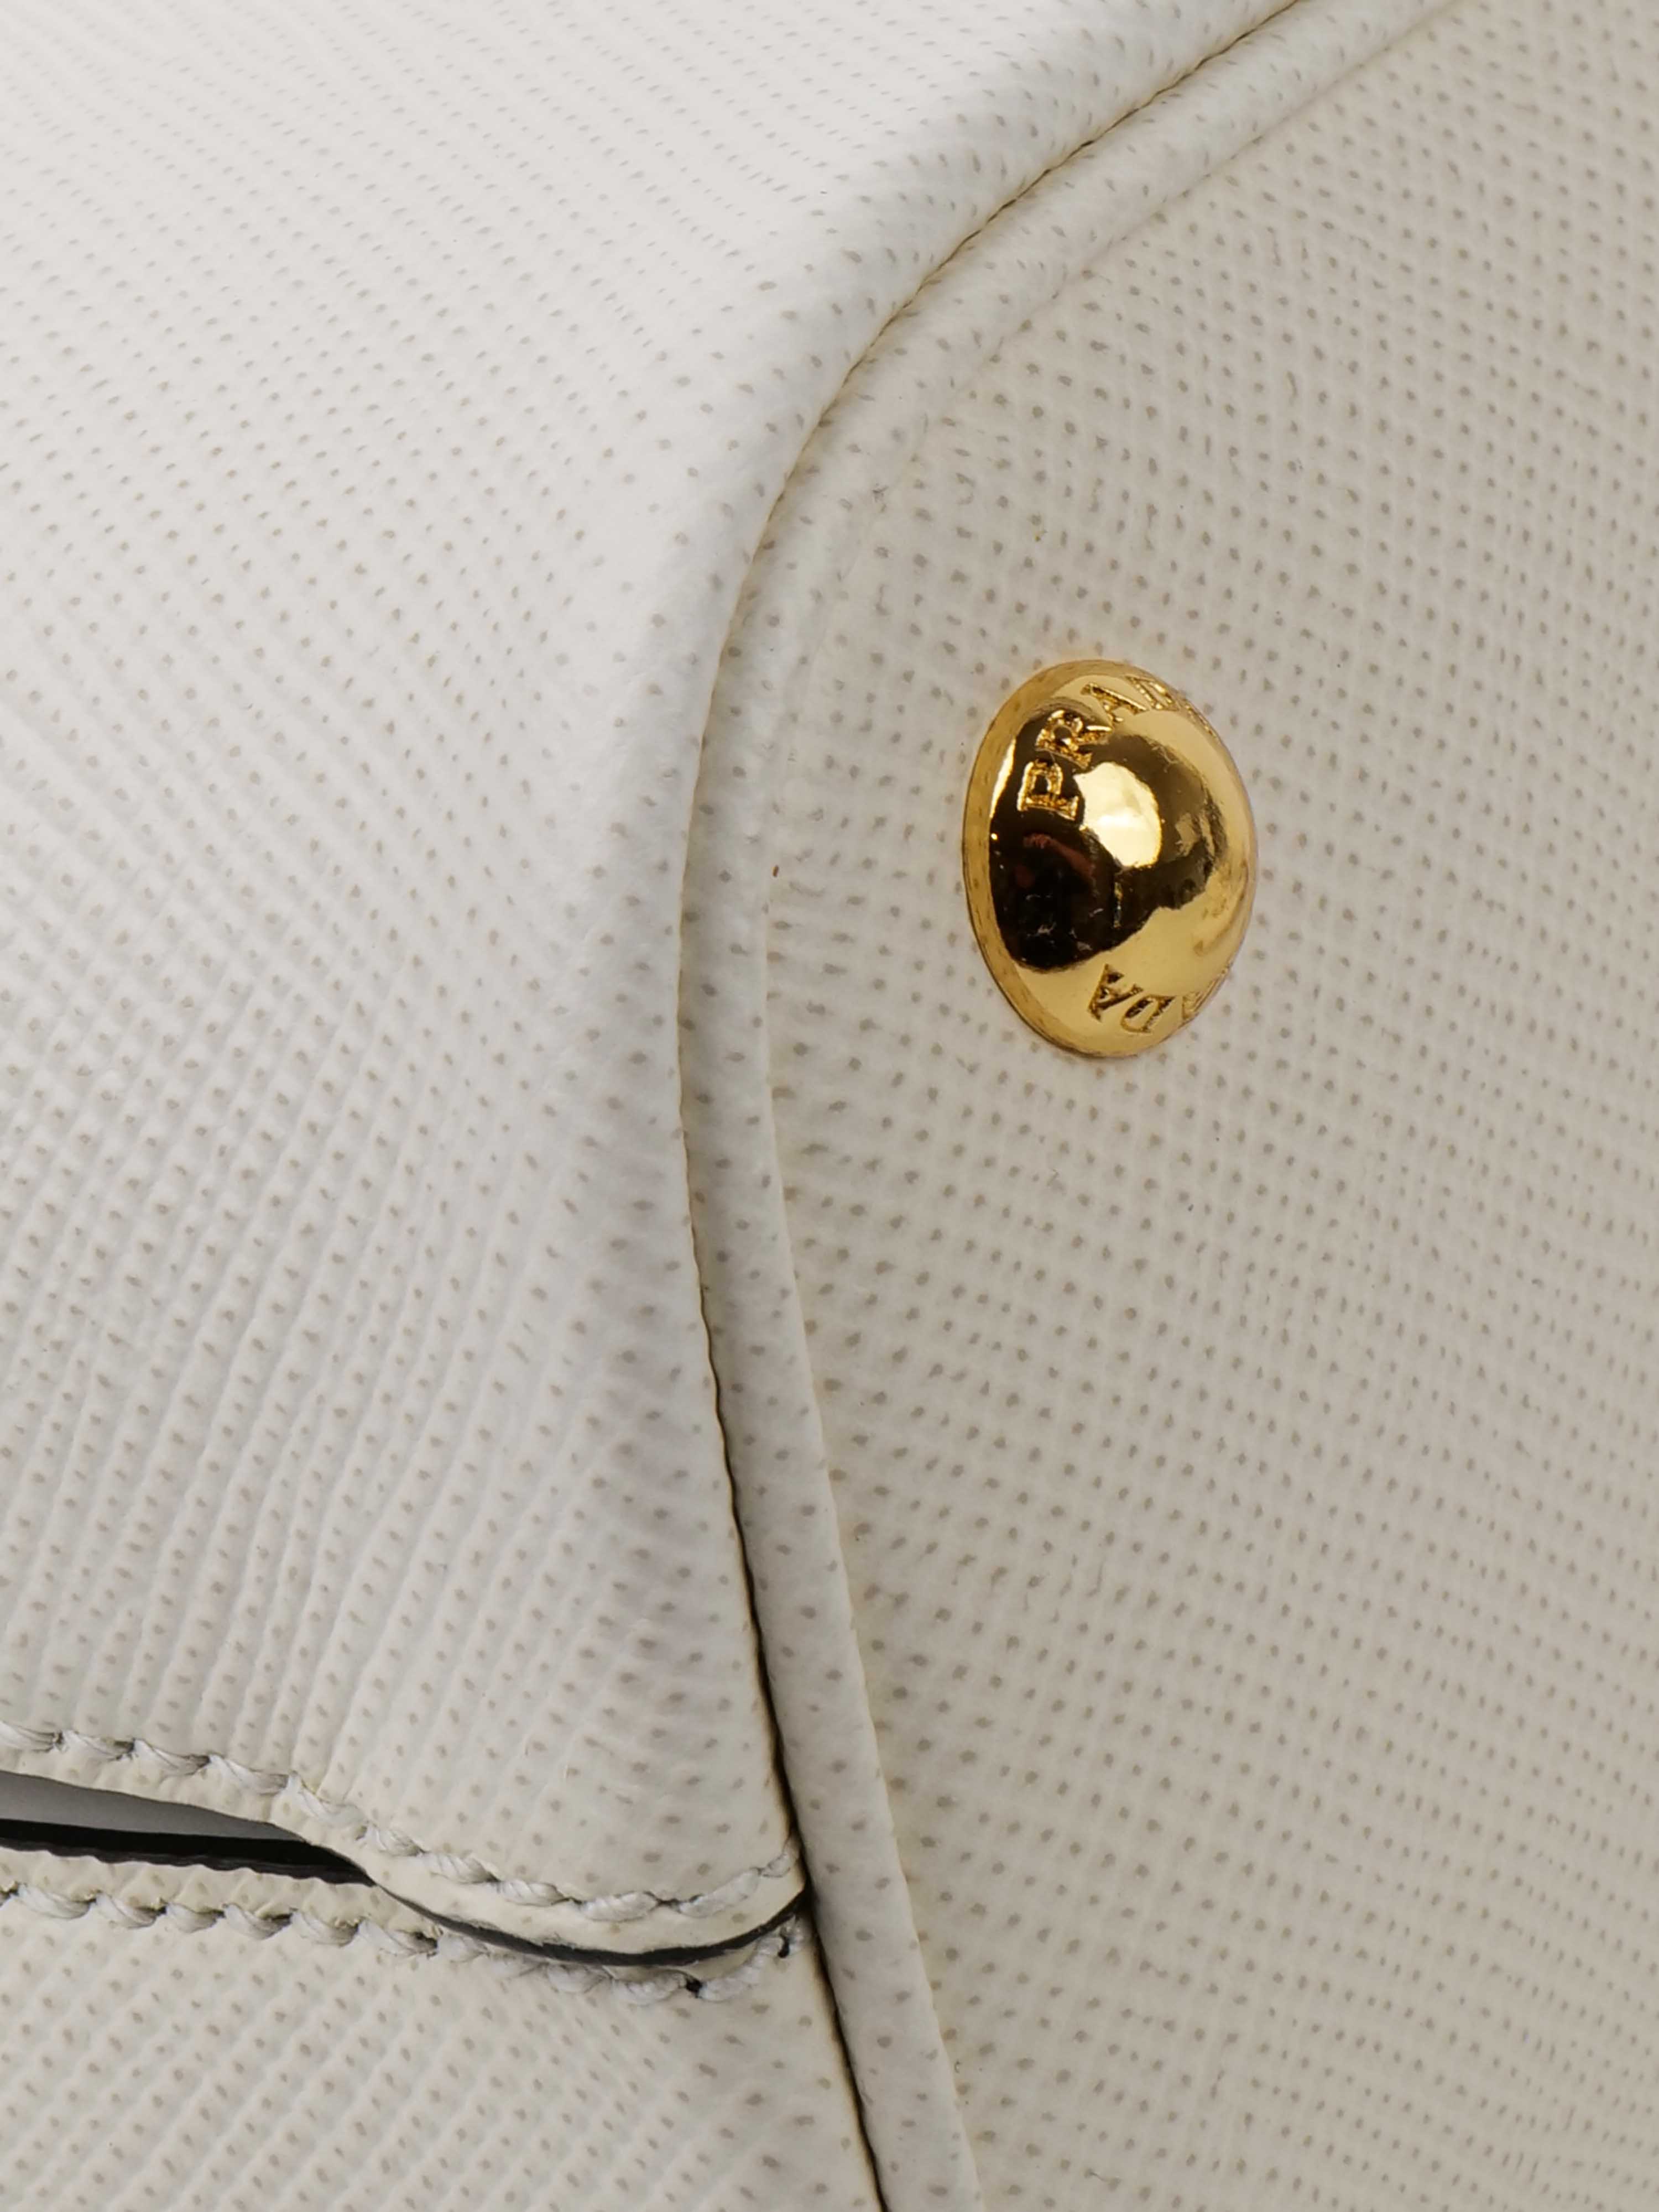 Prada Small Saffiano White Panier Bag.